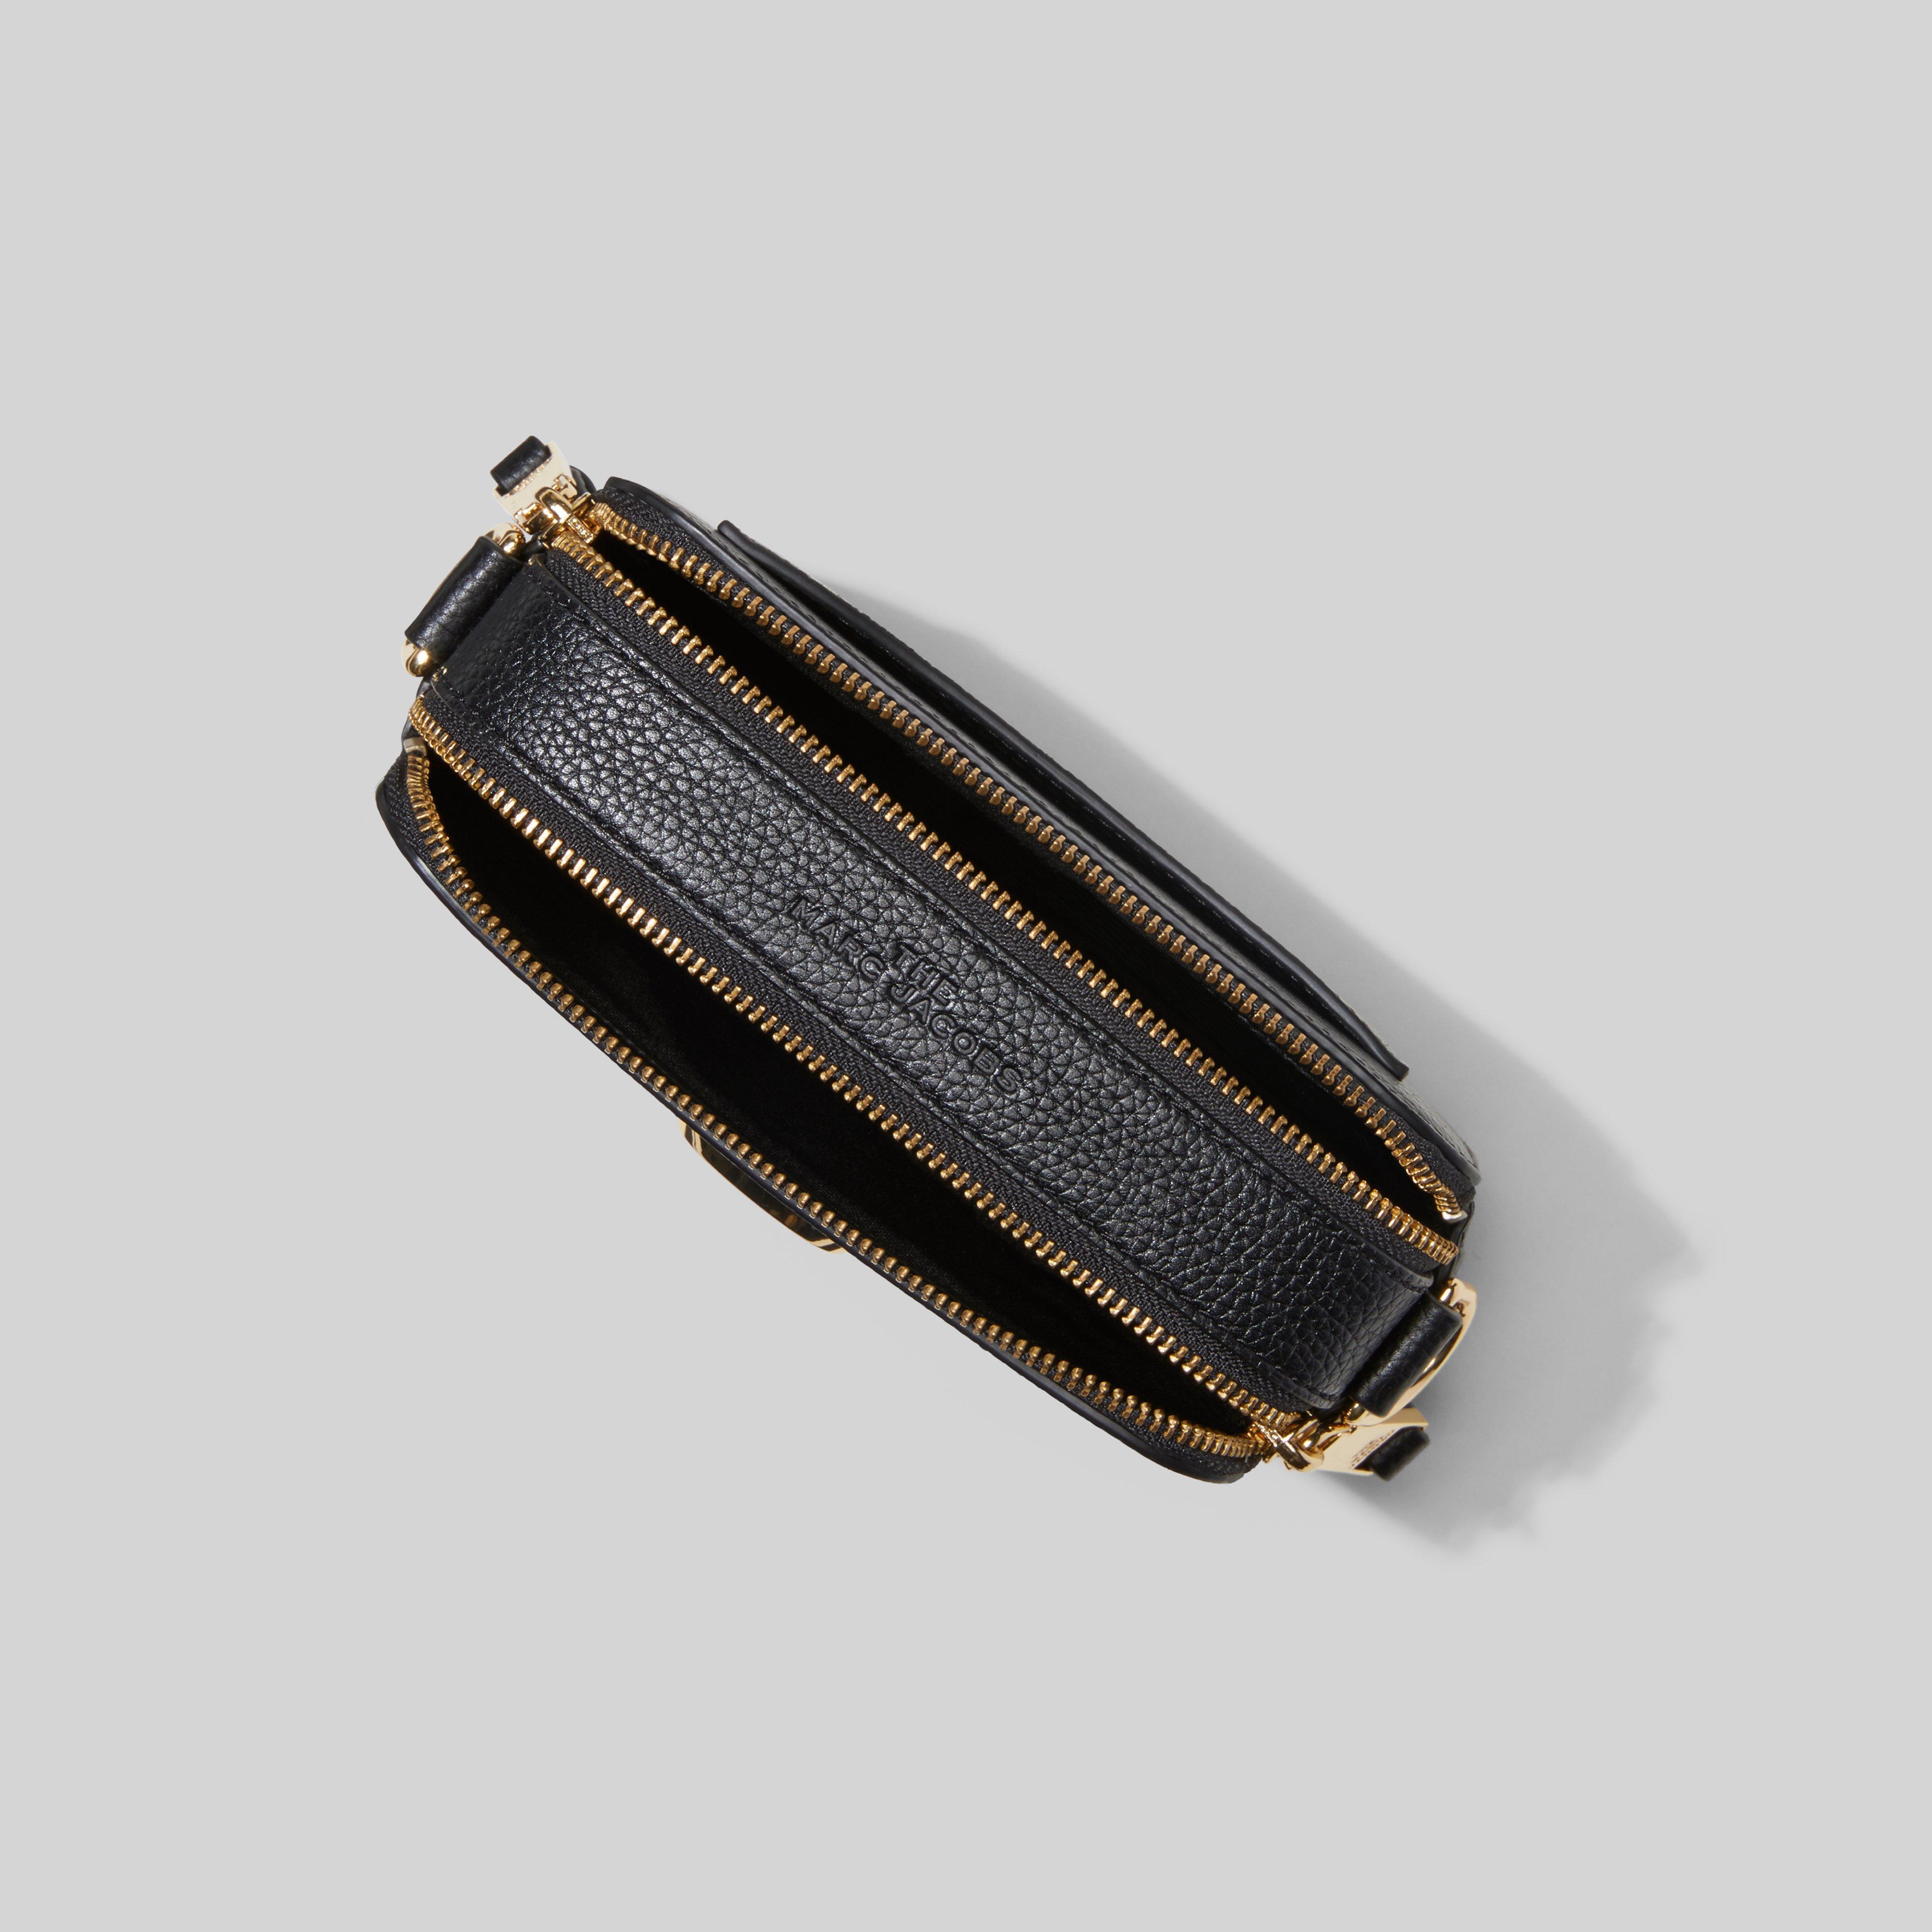 The Snapshot black bag  Le Noir - Unconventional Luxury